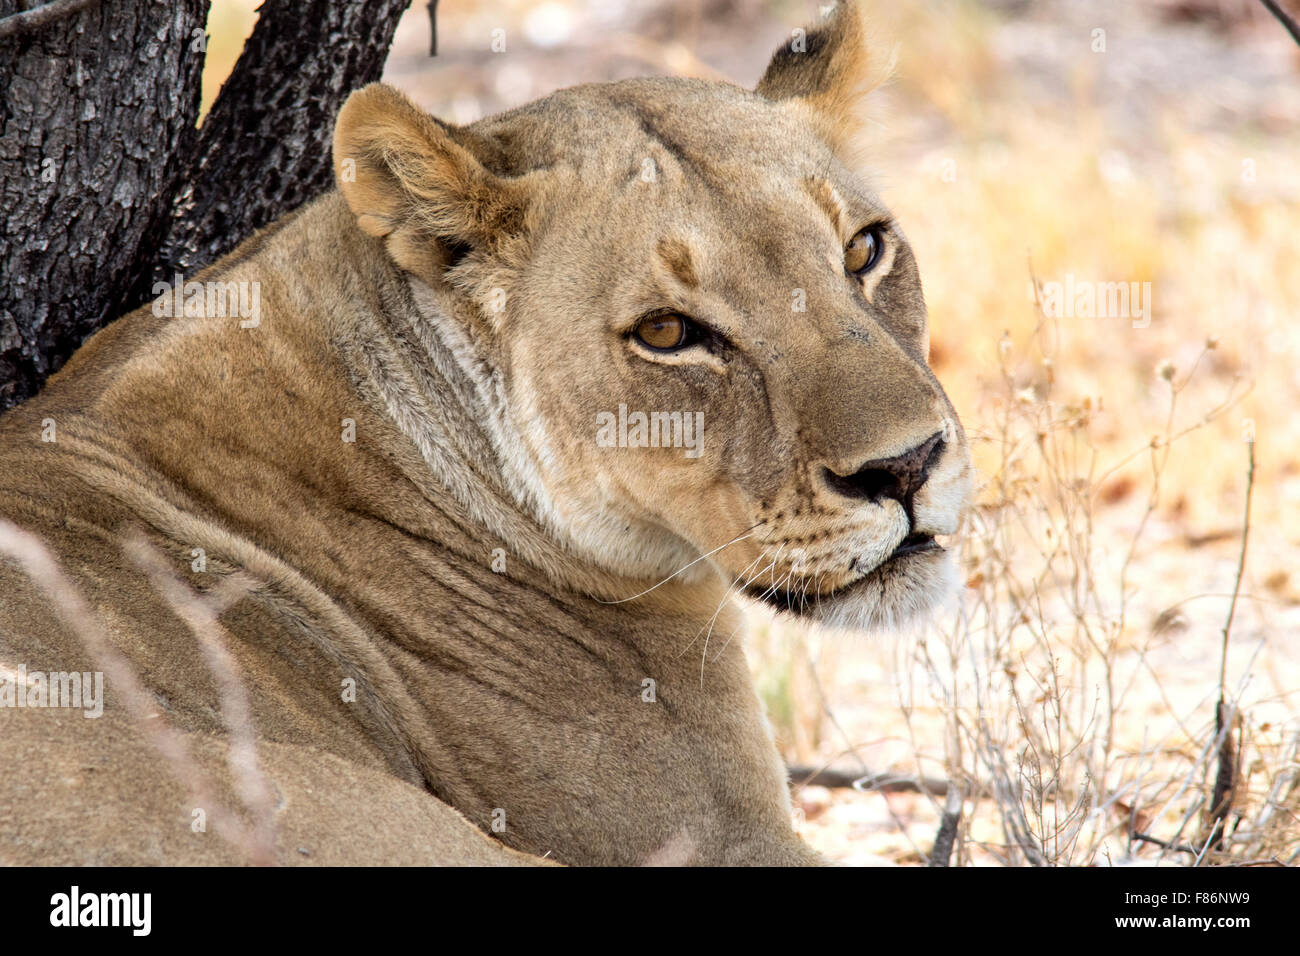 L'African Lion (Panthera leo) - Etosha National Park, Namibie, Afrique Banque D'Images